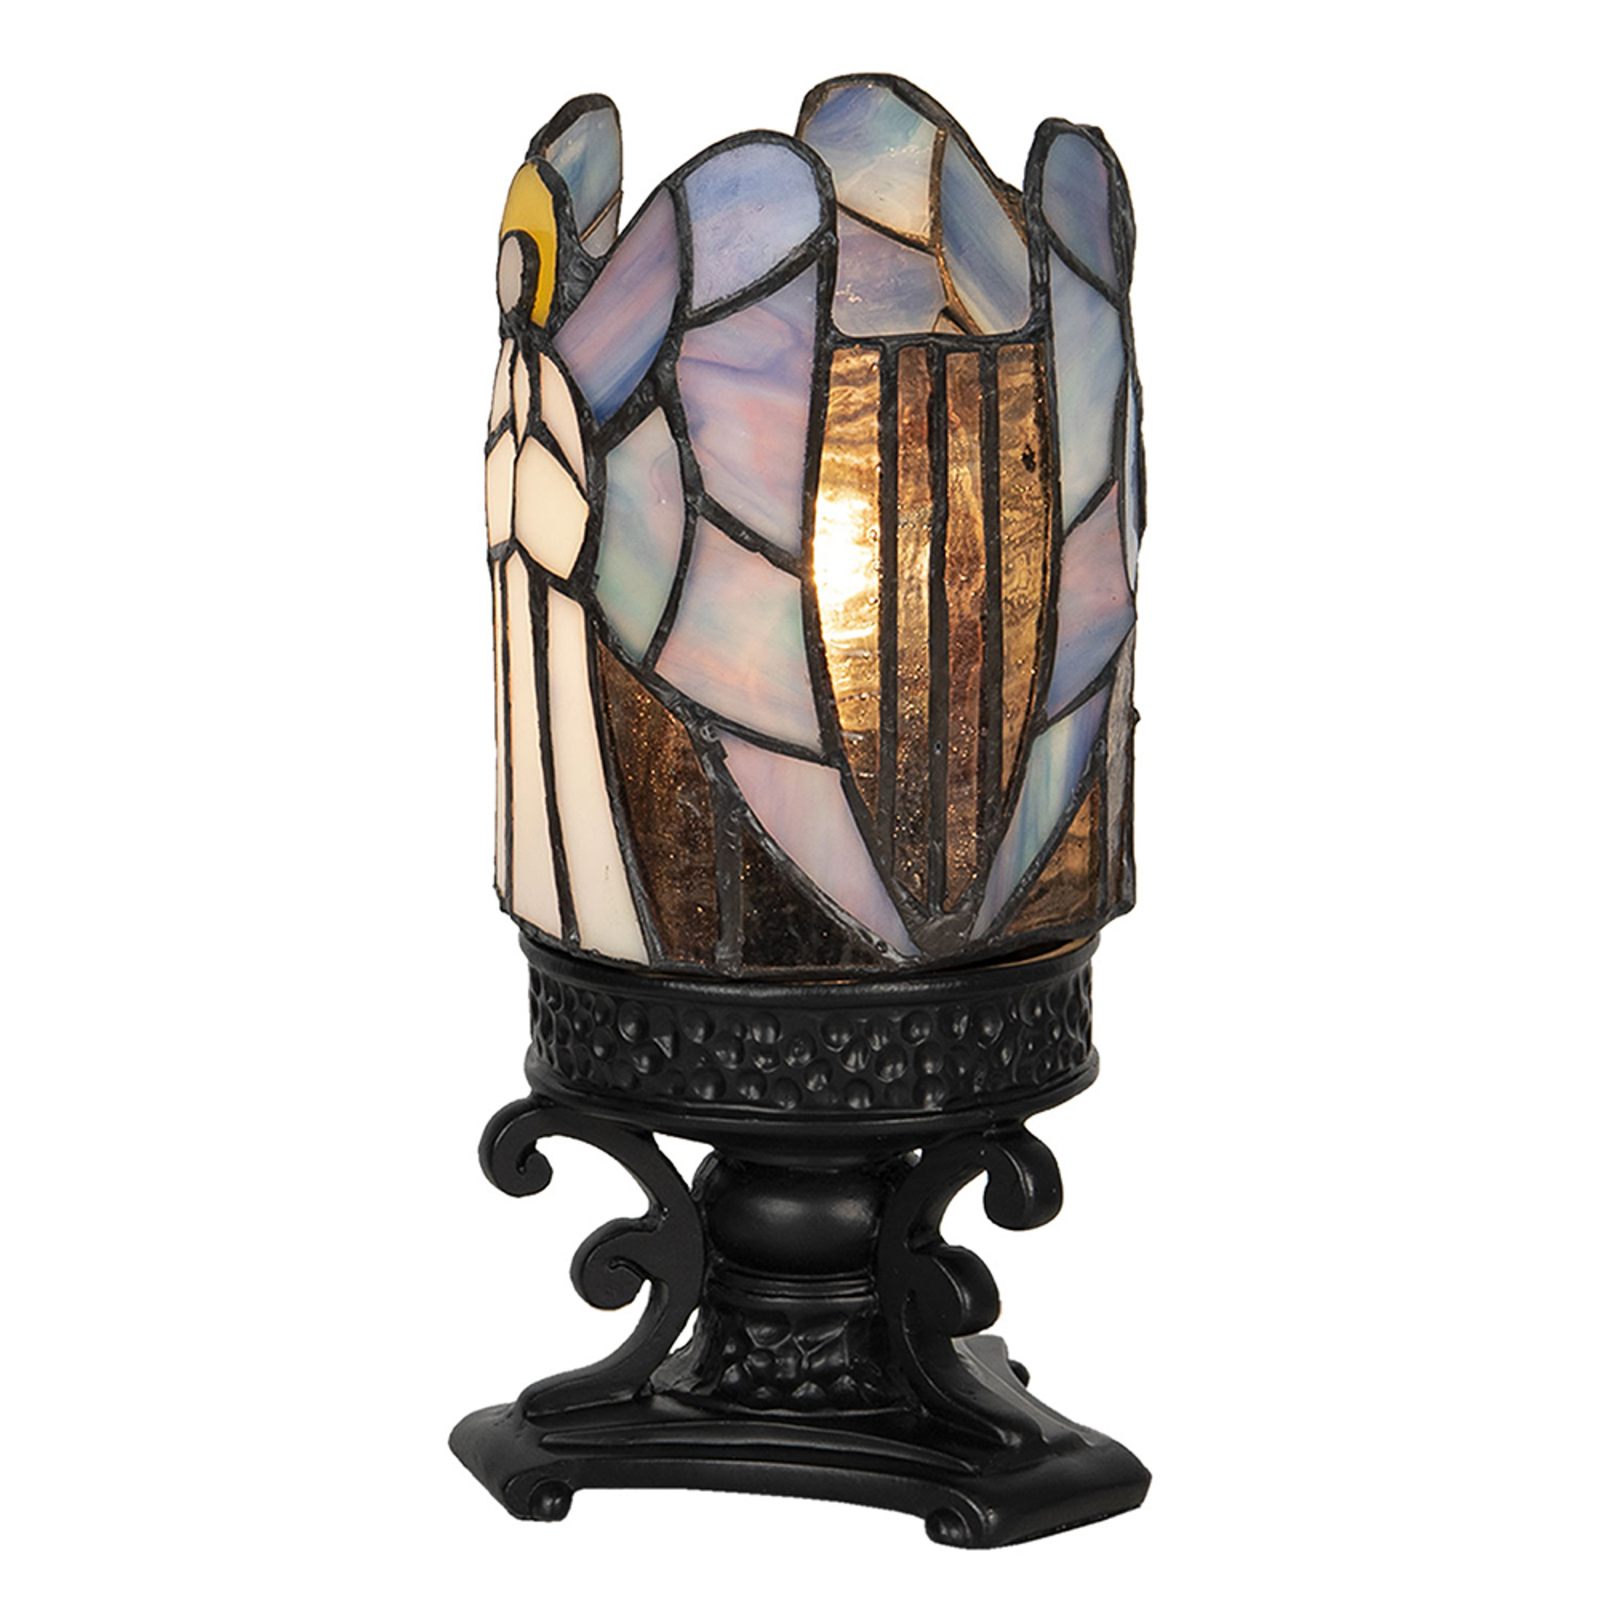 Galda lampa 5LL-6052, Tiffany dizains